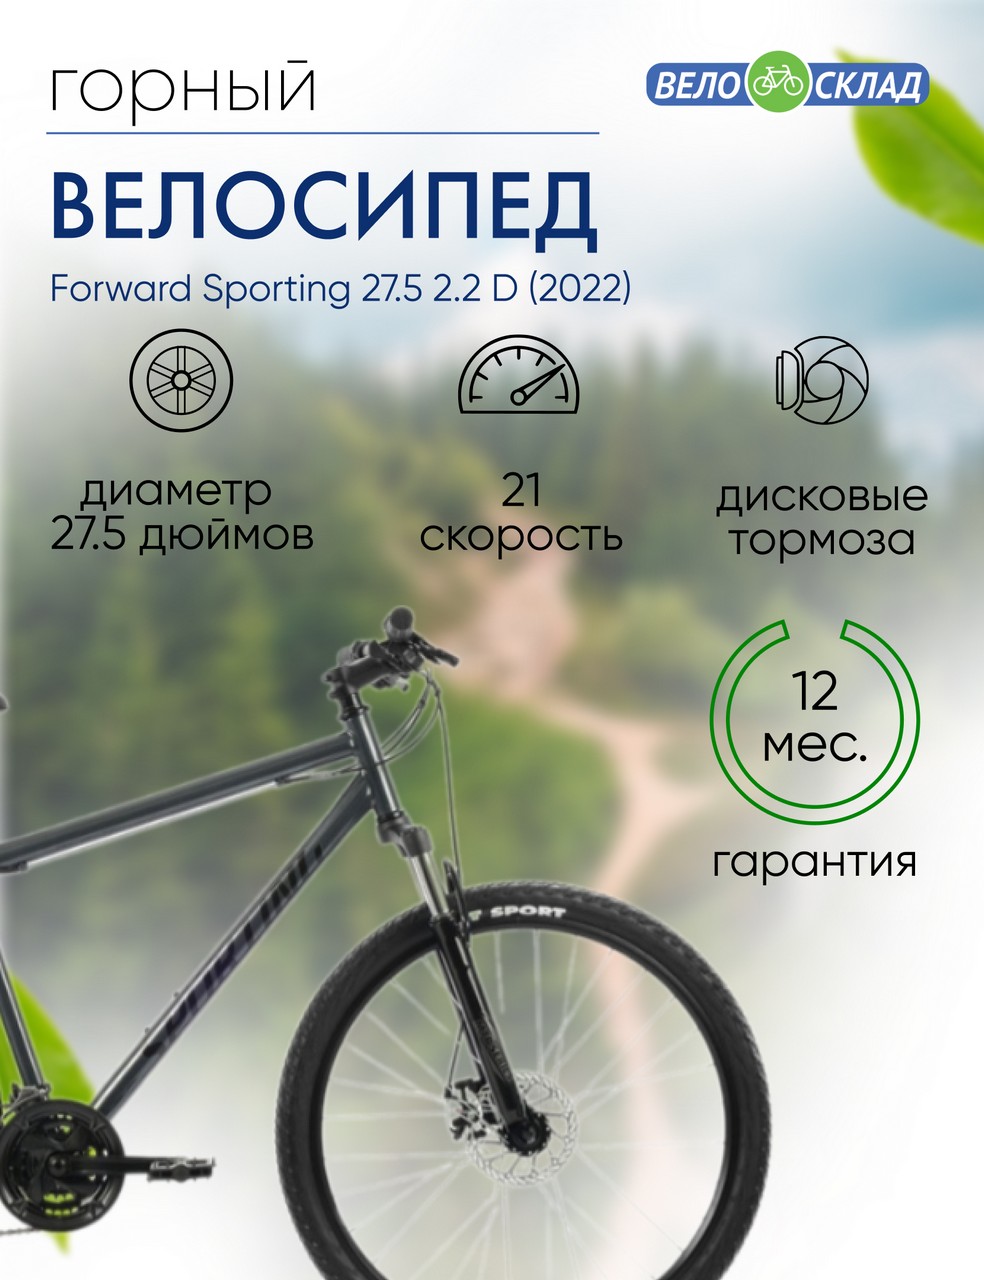 Горный велосипед Forward Sporting 27.5 2.2 D, год 2022, цвет Серебристый-Черный, ростовка 19